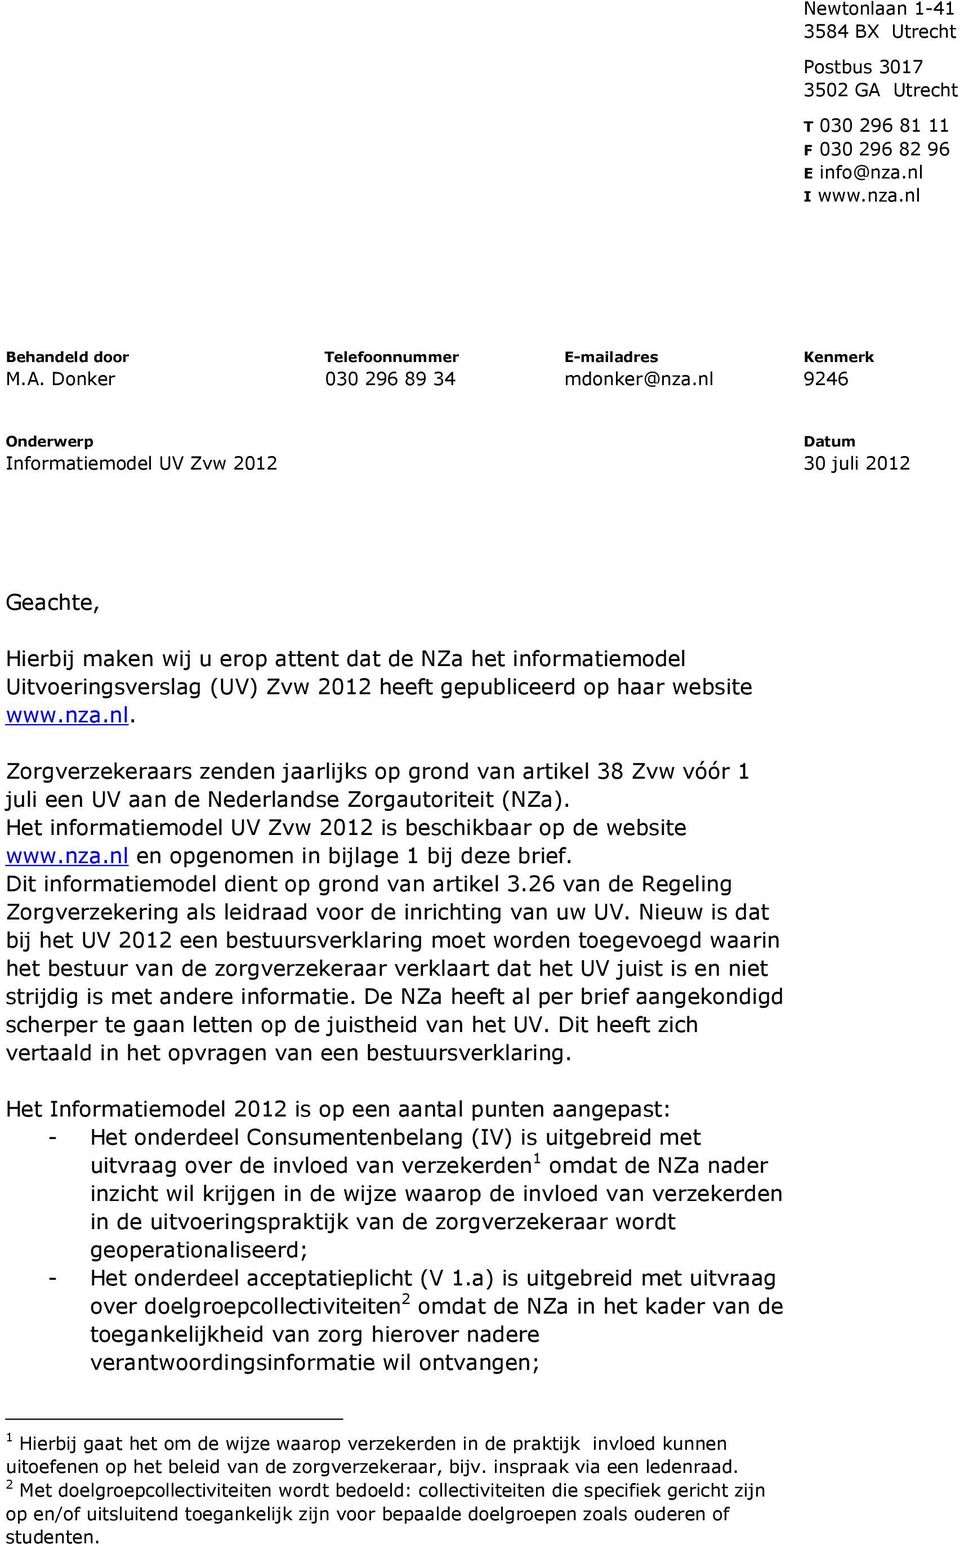 www.nza.nl. Zorgverzekeraars zenden jaarlijks op grond van artikel 38 Zvw vóór 1 juli een UV aan de Nederlandse Zorgautoriteit (NZa). Het informatiemodel UV Zvw 2012 is beschikbaar op de website www.